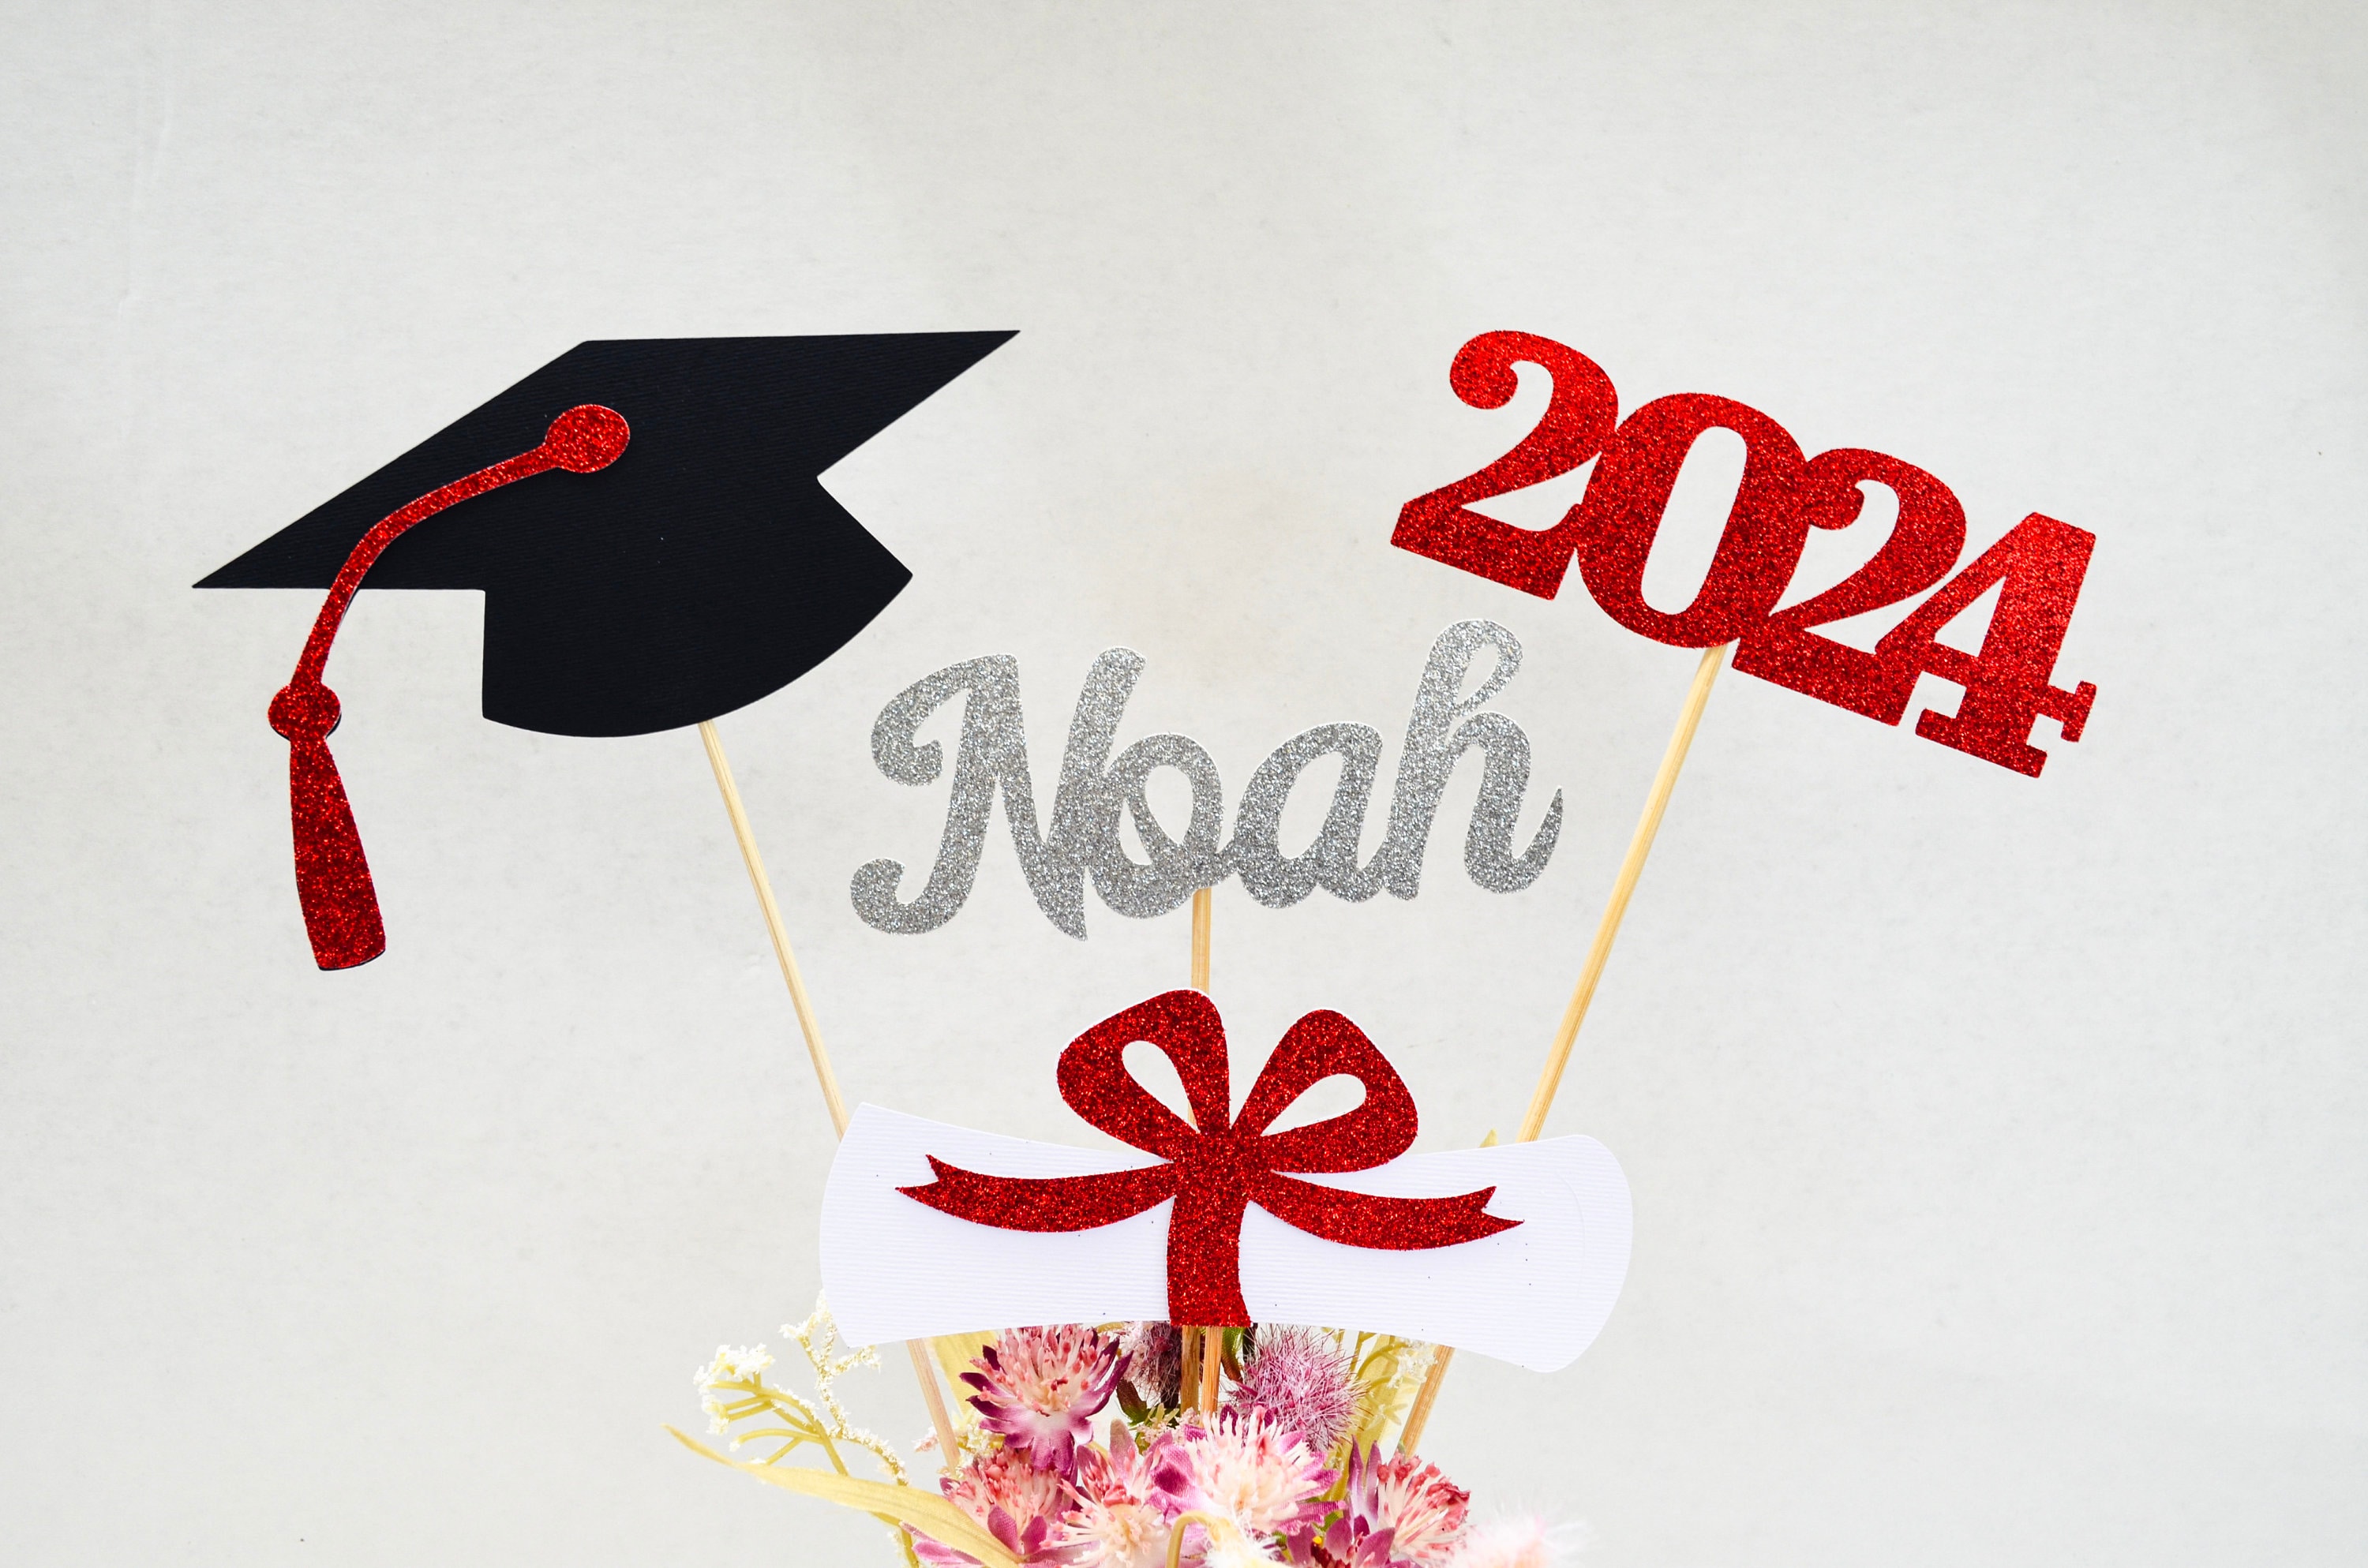 Pink Tassel,Pink Graduation Tassel 2024,Class of 2024 Tassel,2024 Tassel  Graduation,2024 Cap Tassel for Graduation Cap 2024,Charm Ceremonies